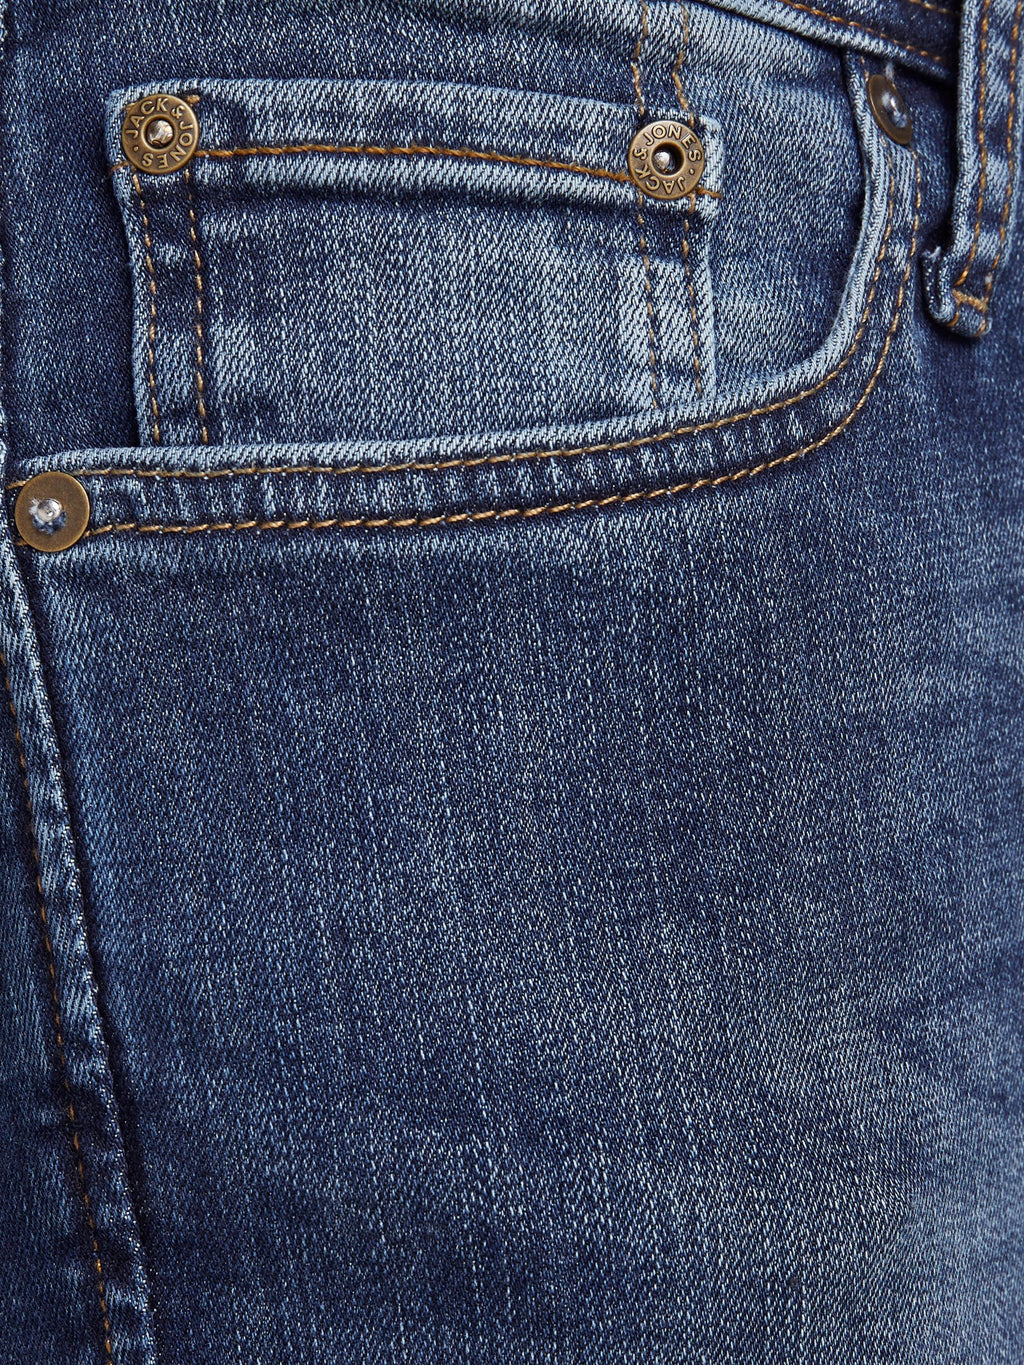 Liam Original Jeans 005 - Blue Denim